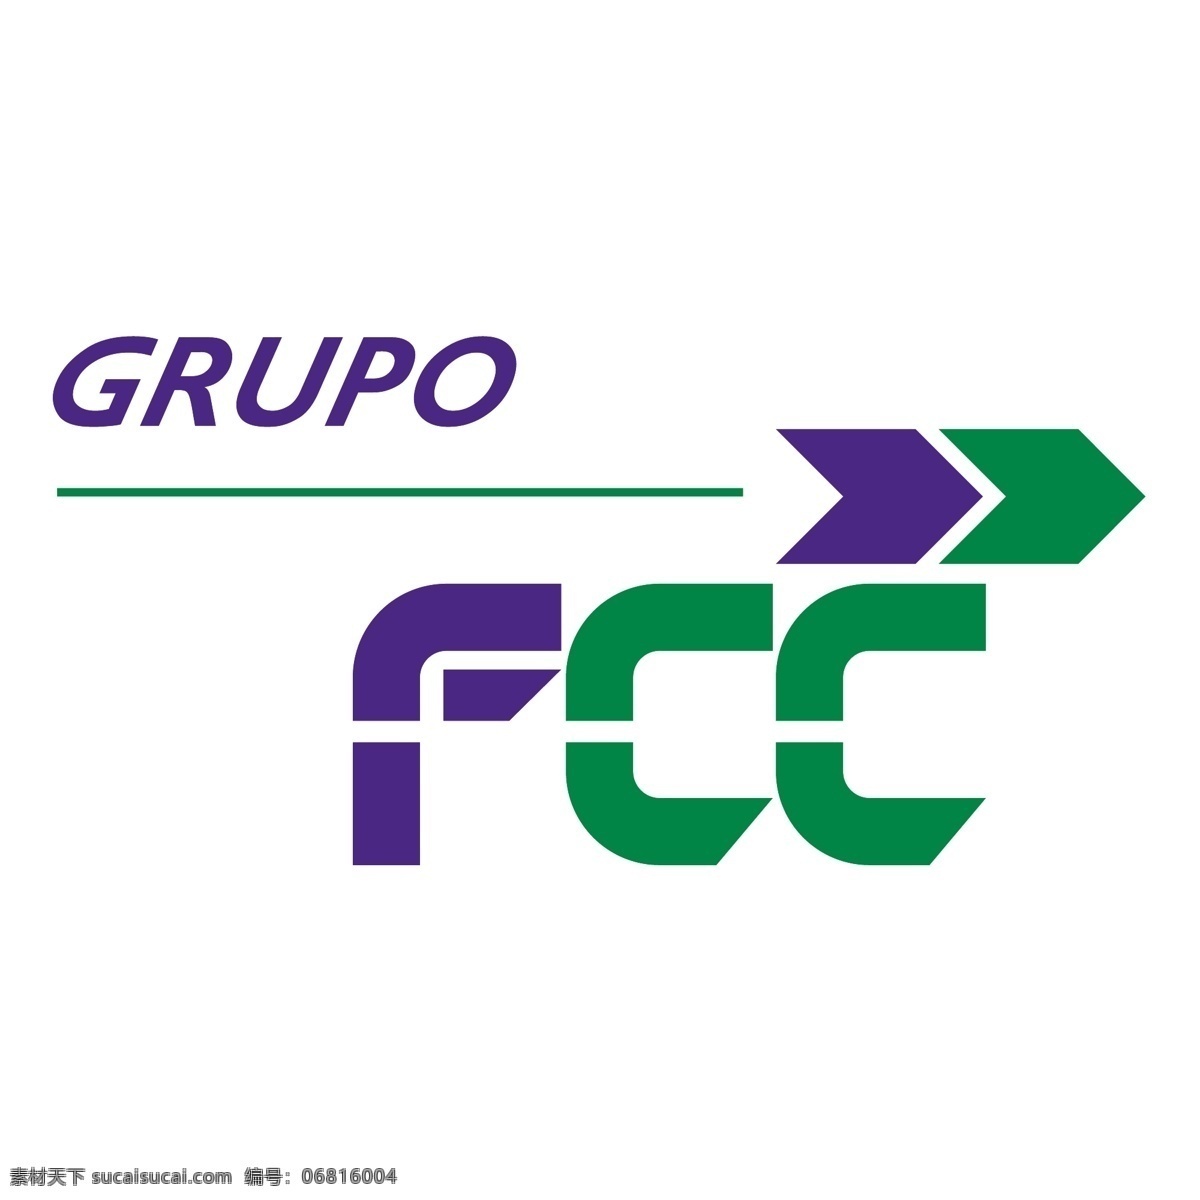 矢量标志 催化裂化 fcc集团 该集团 该标志 矢量 grupo 免费下载该 标志该 fcc 免费 载体 催化 裂化 法规 标志 遵守fcc fcc徽标 向量 标准 矢量图 建筑家居